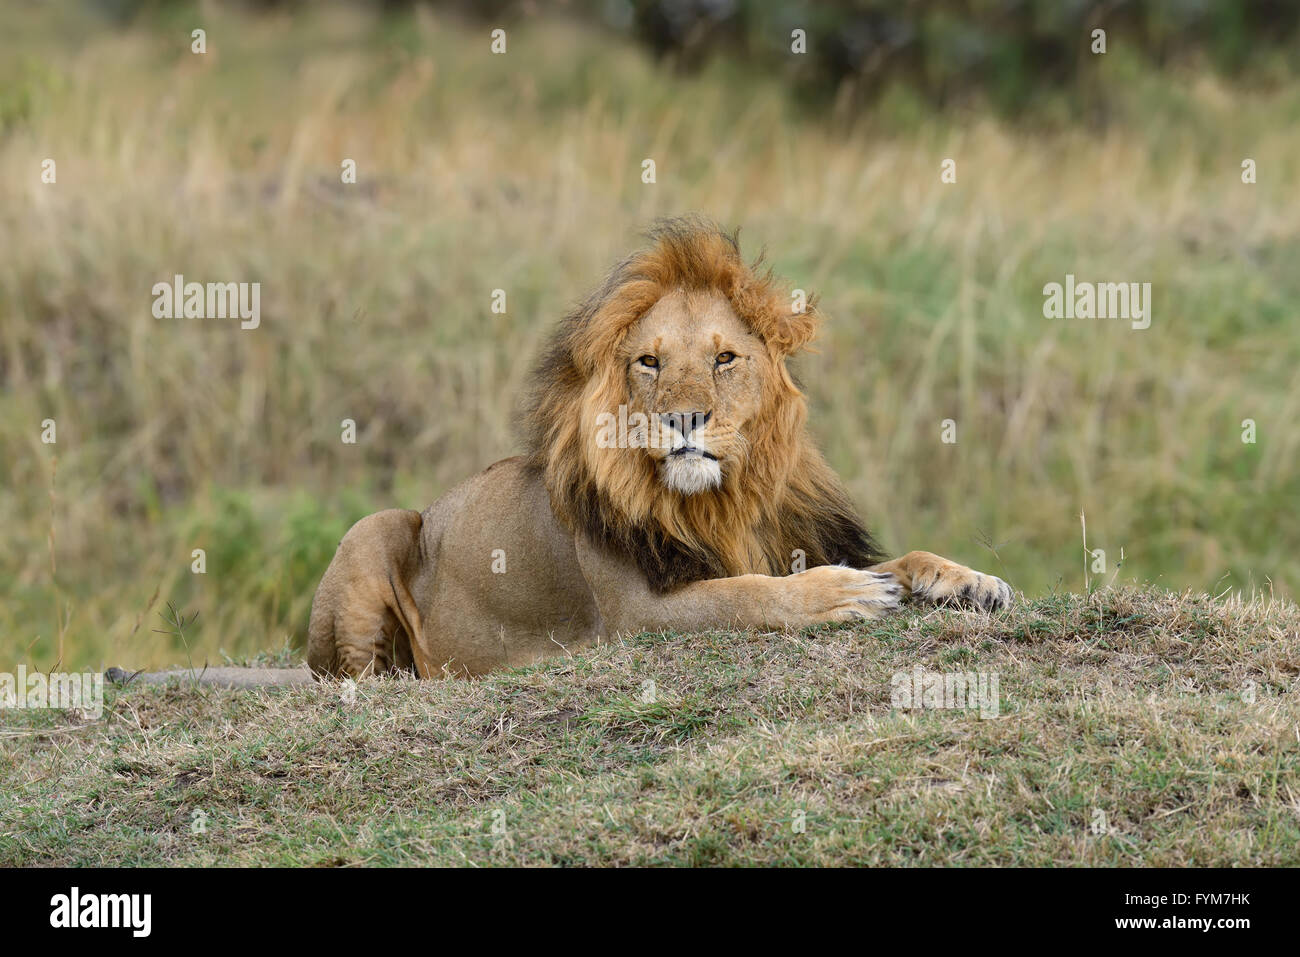 A proximité du parc national de lion du Kenya, Afrique Banque D'Images